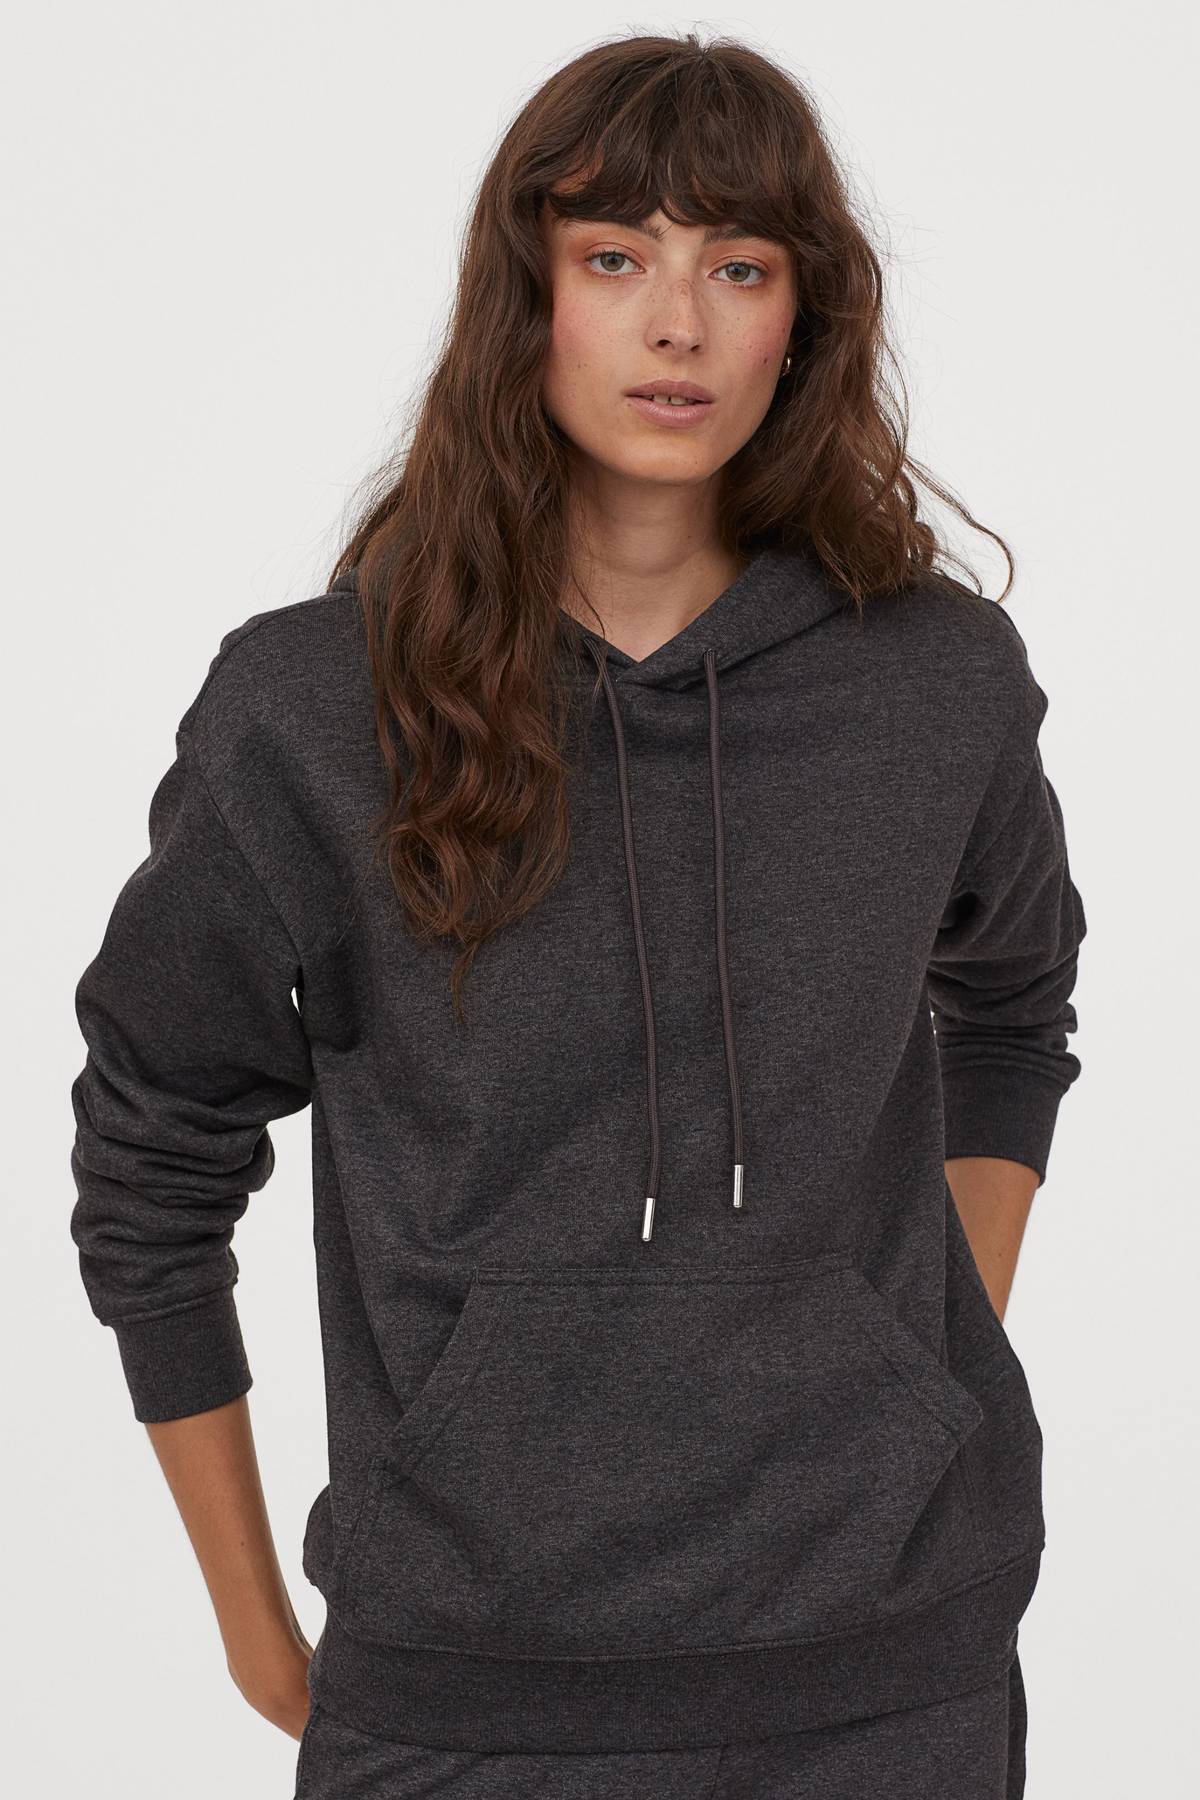 Một chiếc áo hoodie màu xám than rất dễ kết hợp với những gam màu khác.